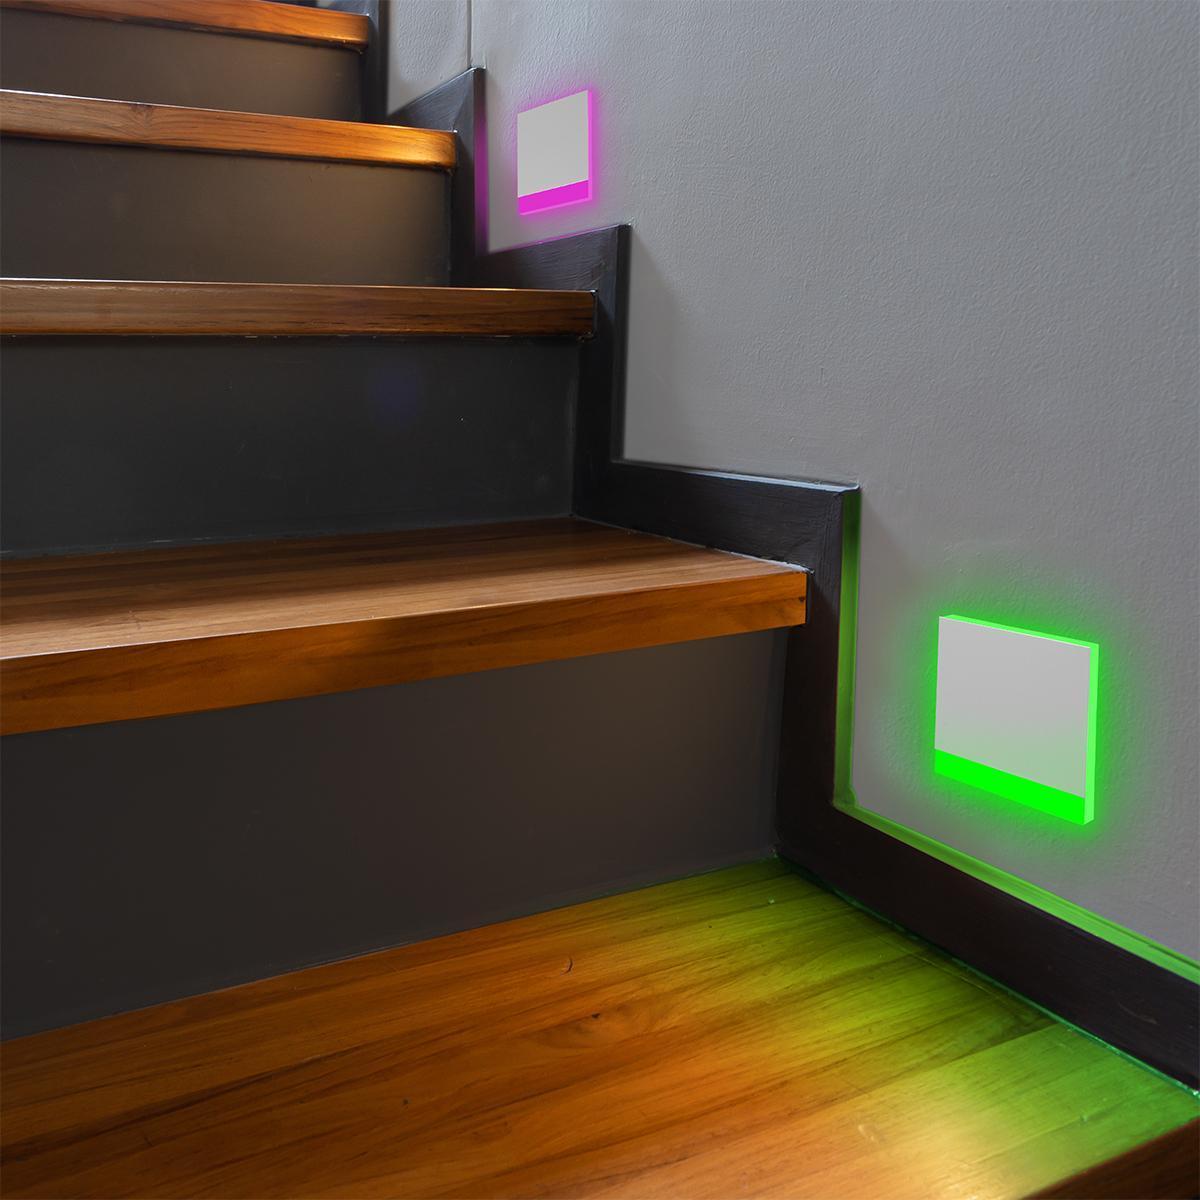 LED Treppenleuchte eckig weiß - Lichtfarbe: RGB Kaltweiß 3W - Lichtaustritt: Orbis